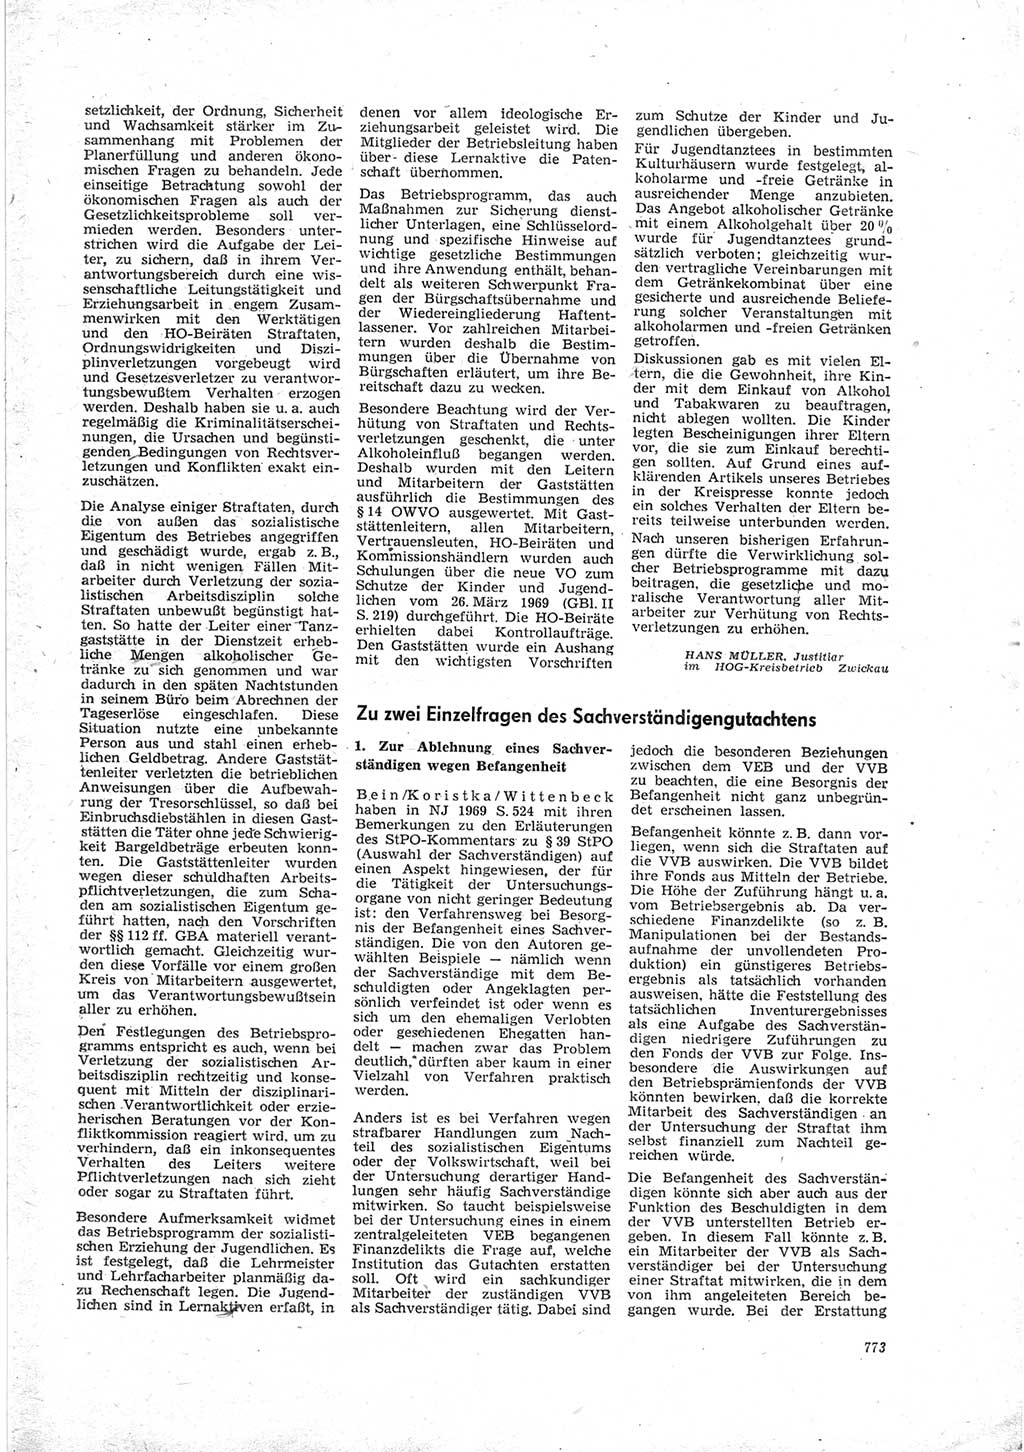 Neue Justiz (NJ), Zeitschrift für Recht und Rechtswissenschaft [Deutsche Demokratische Republik (DDR)], 23. Jahrgang 1969, Seite 773 (NJ DDR 1969, S. 773)